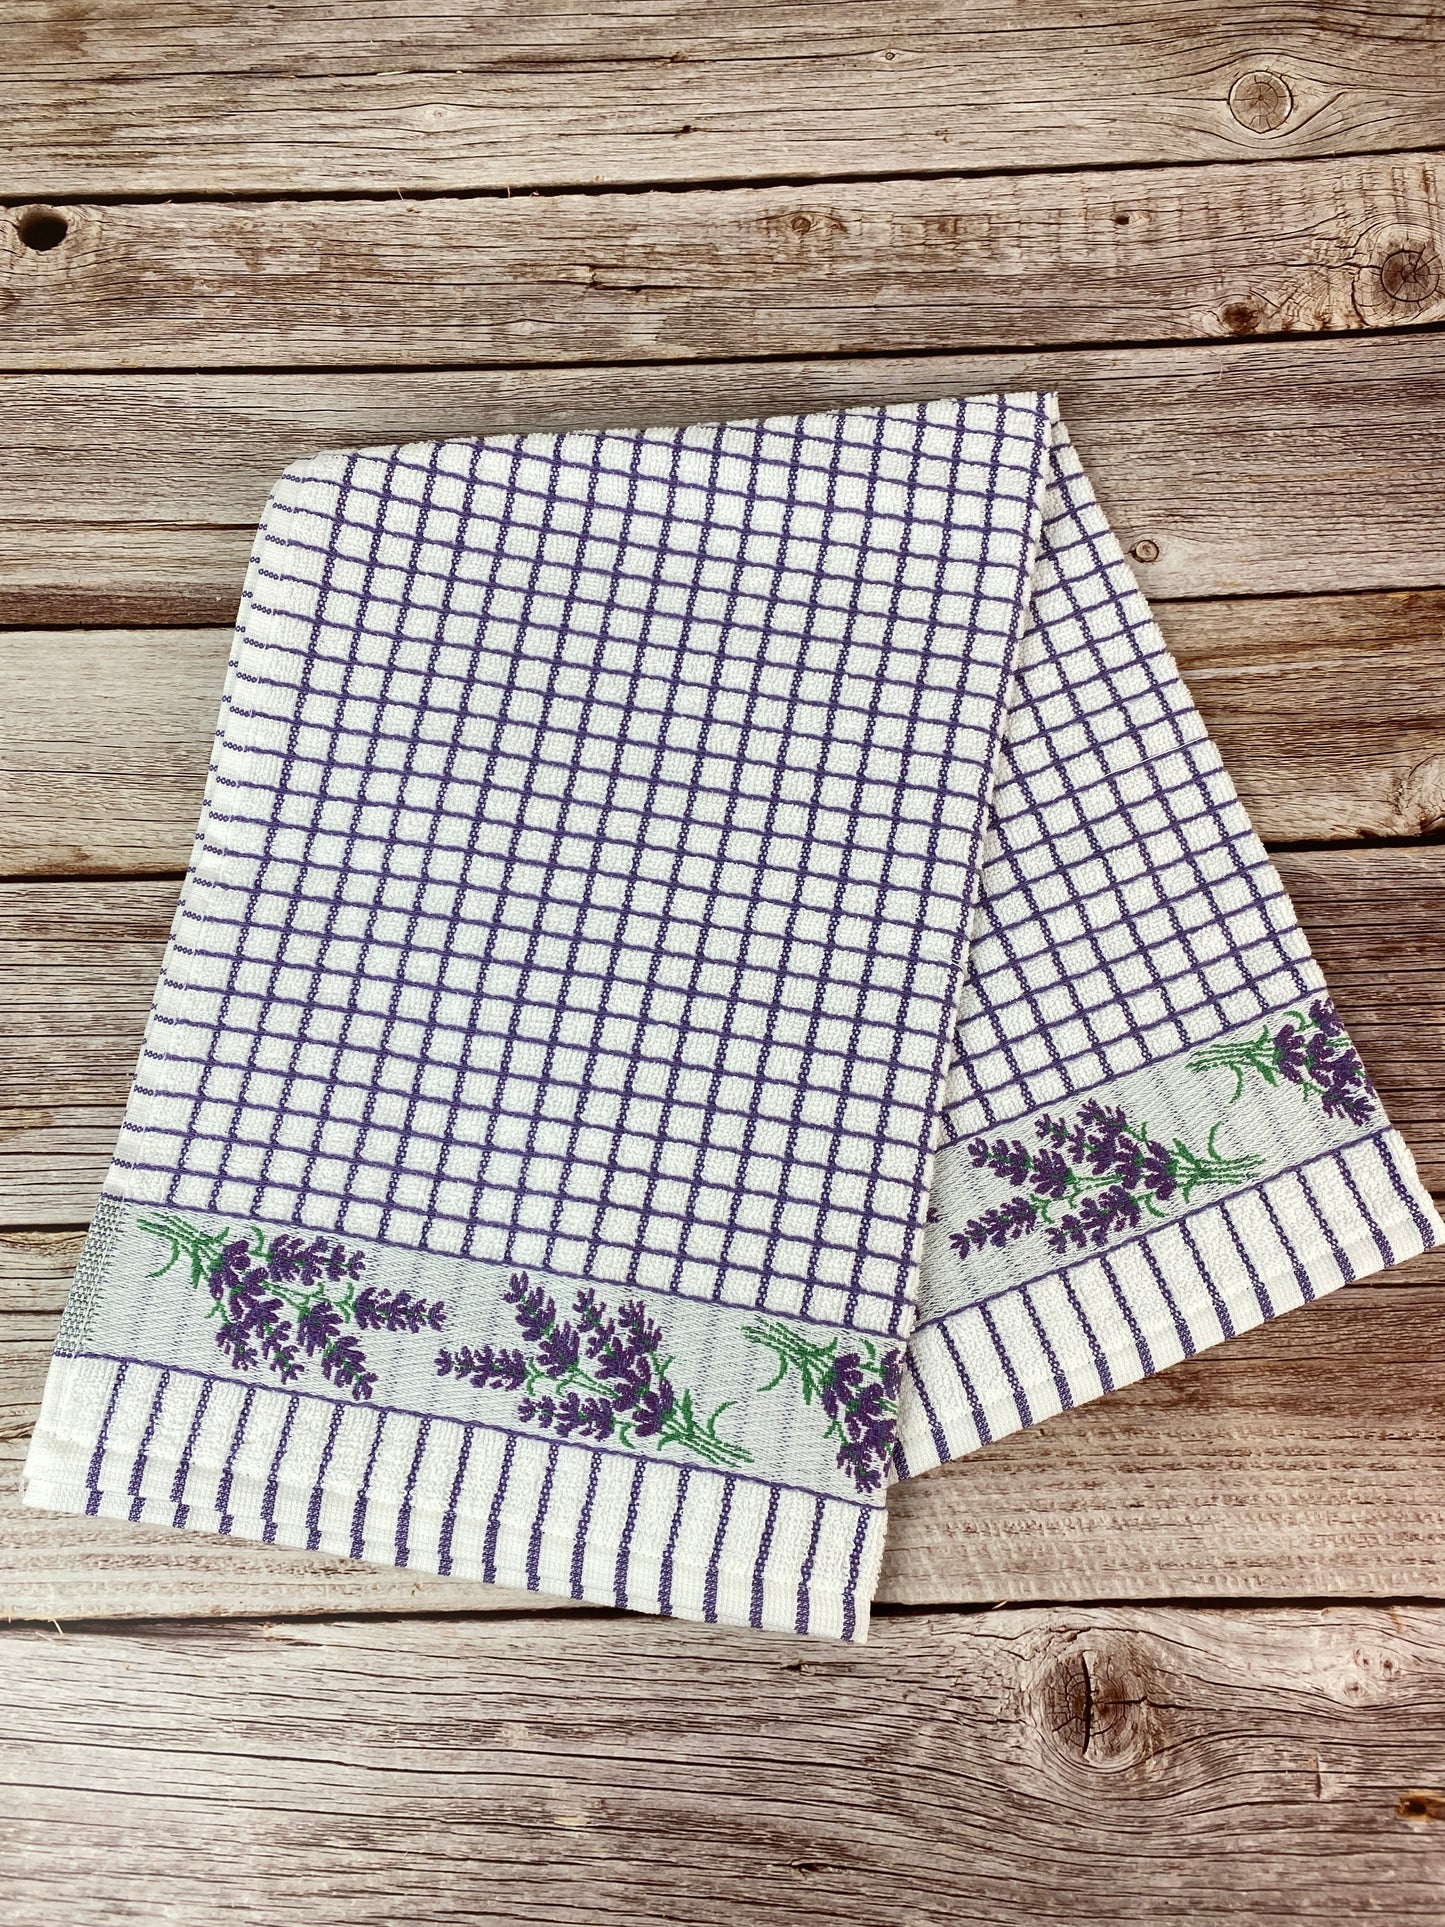 100% Cotton Towel - Lavender